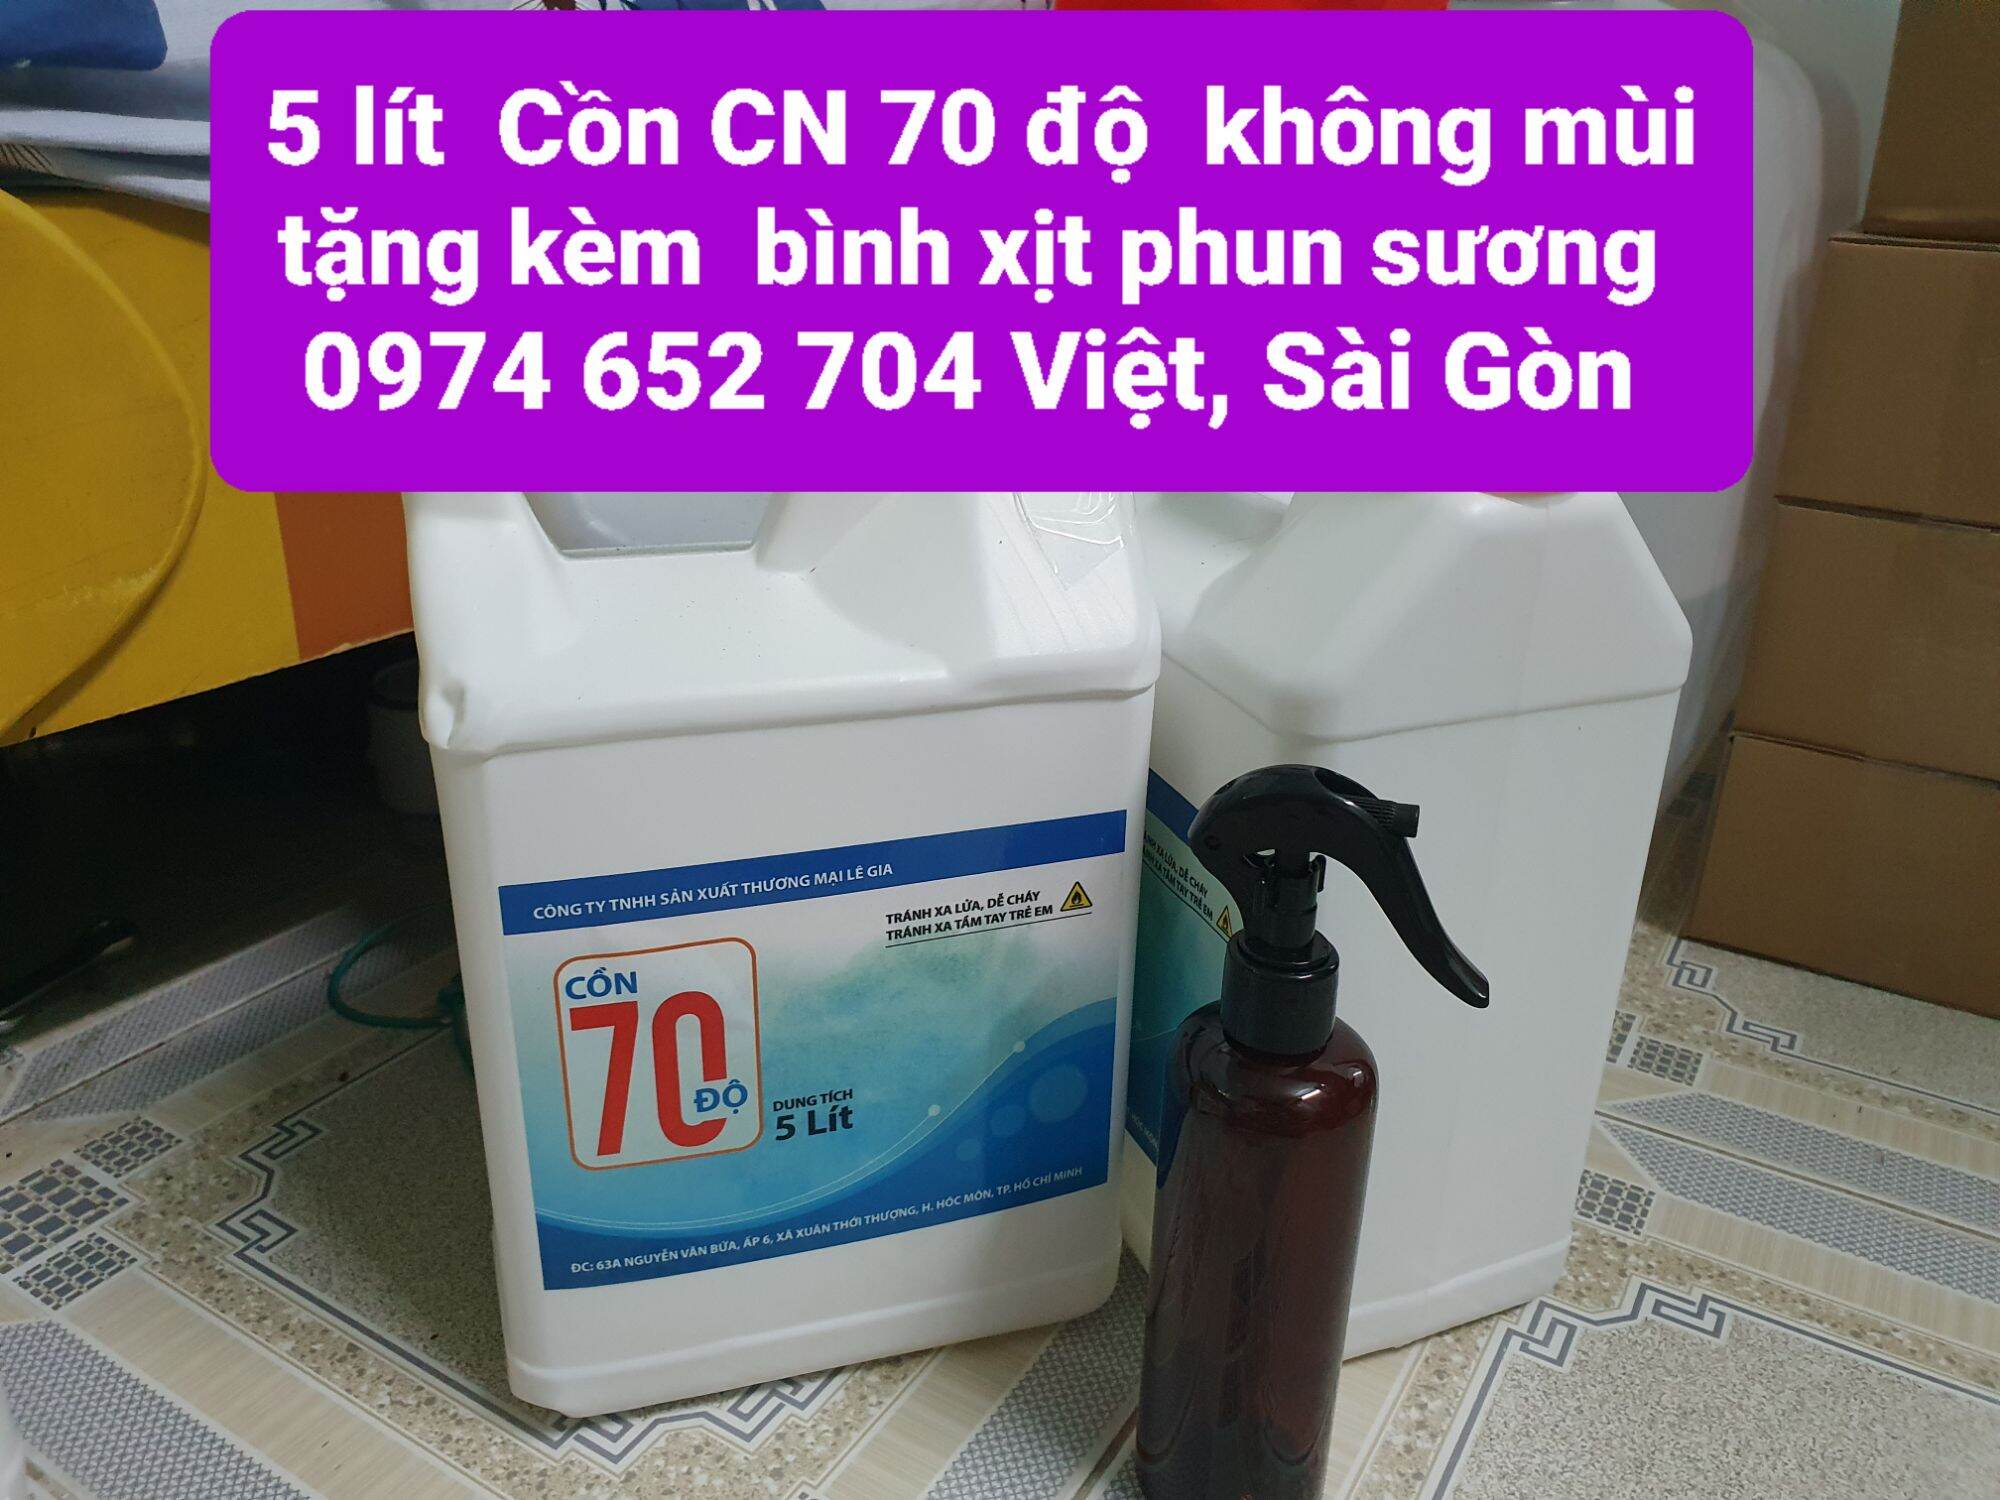 Sài Gòn 5 lít dung dịch sát khuẩn CN không mùi nồng độ 70 sát khuẩn đồ